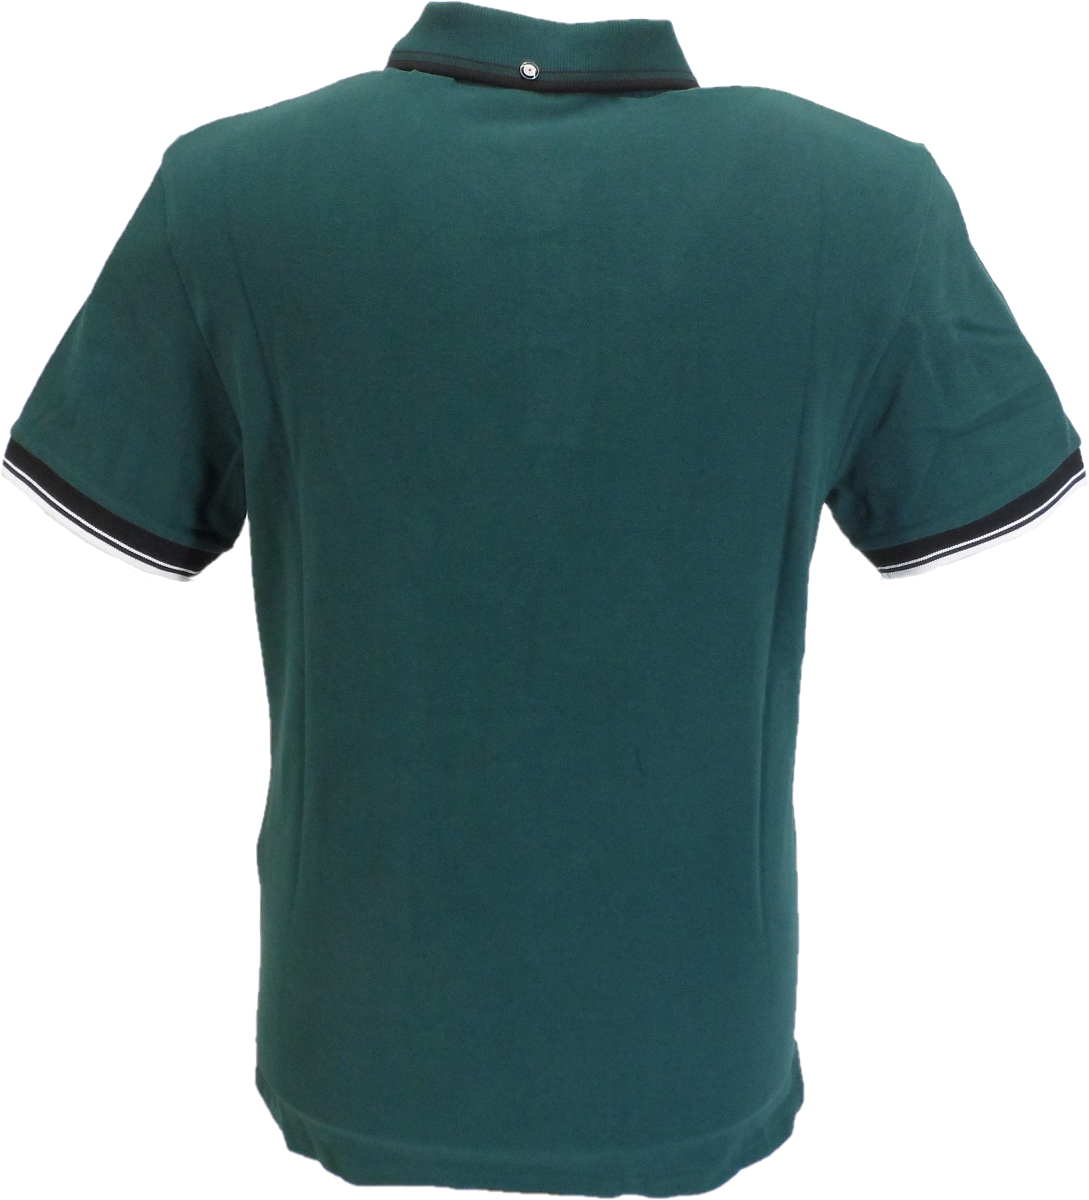 Ben Sherman Men's Signature Ocean Green 100% Cotton Polo Shirt